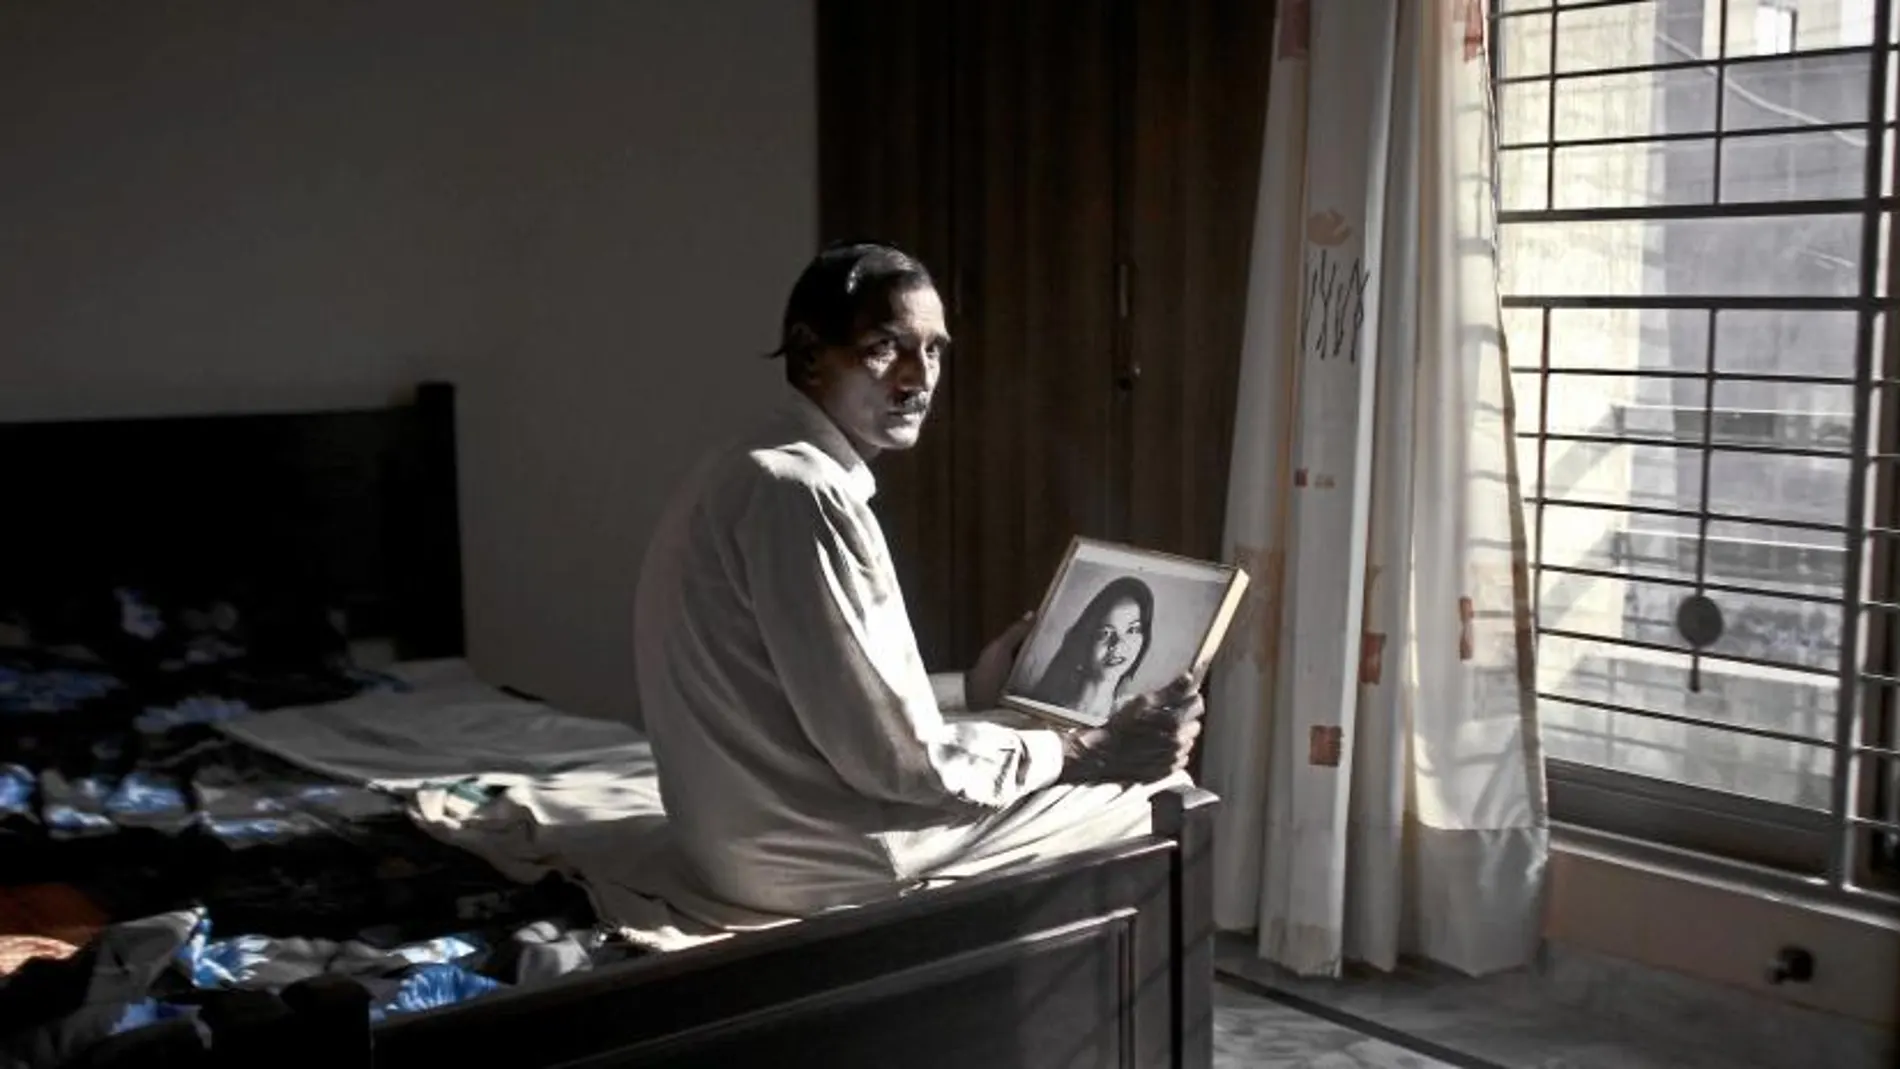 El marido de Asia Bibi contempla el retrato de su esposa, para la que los radicales piden la horca